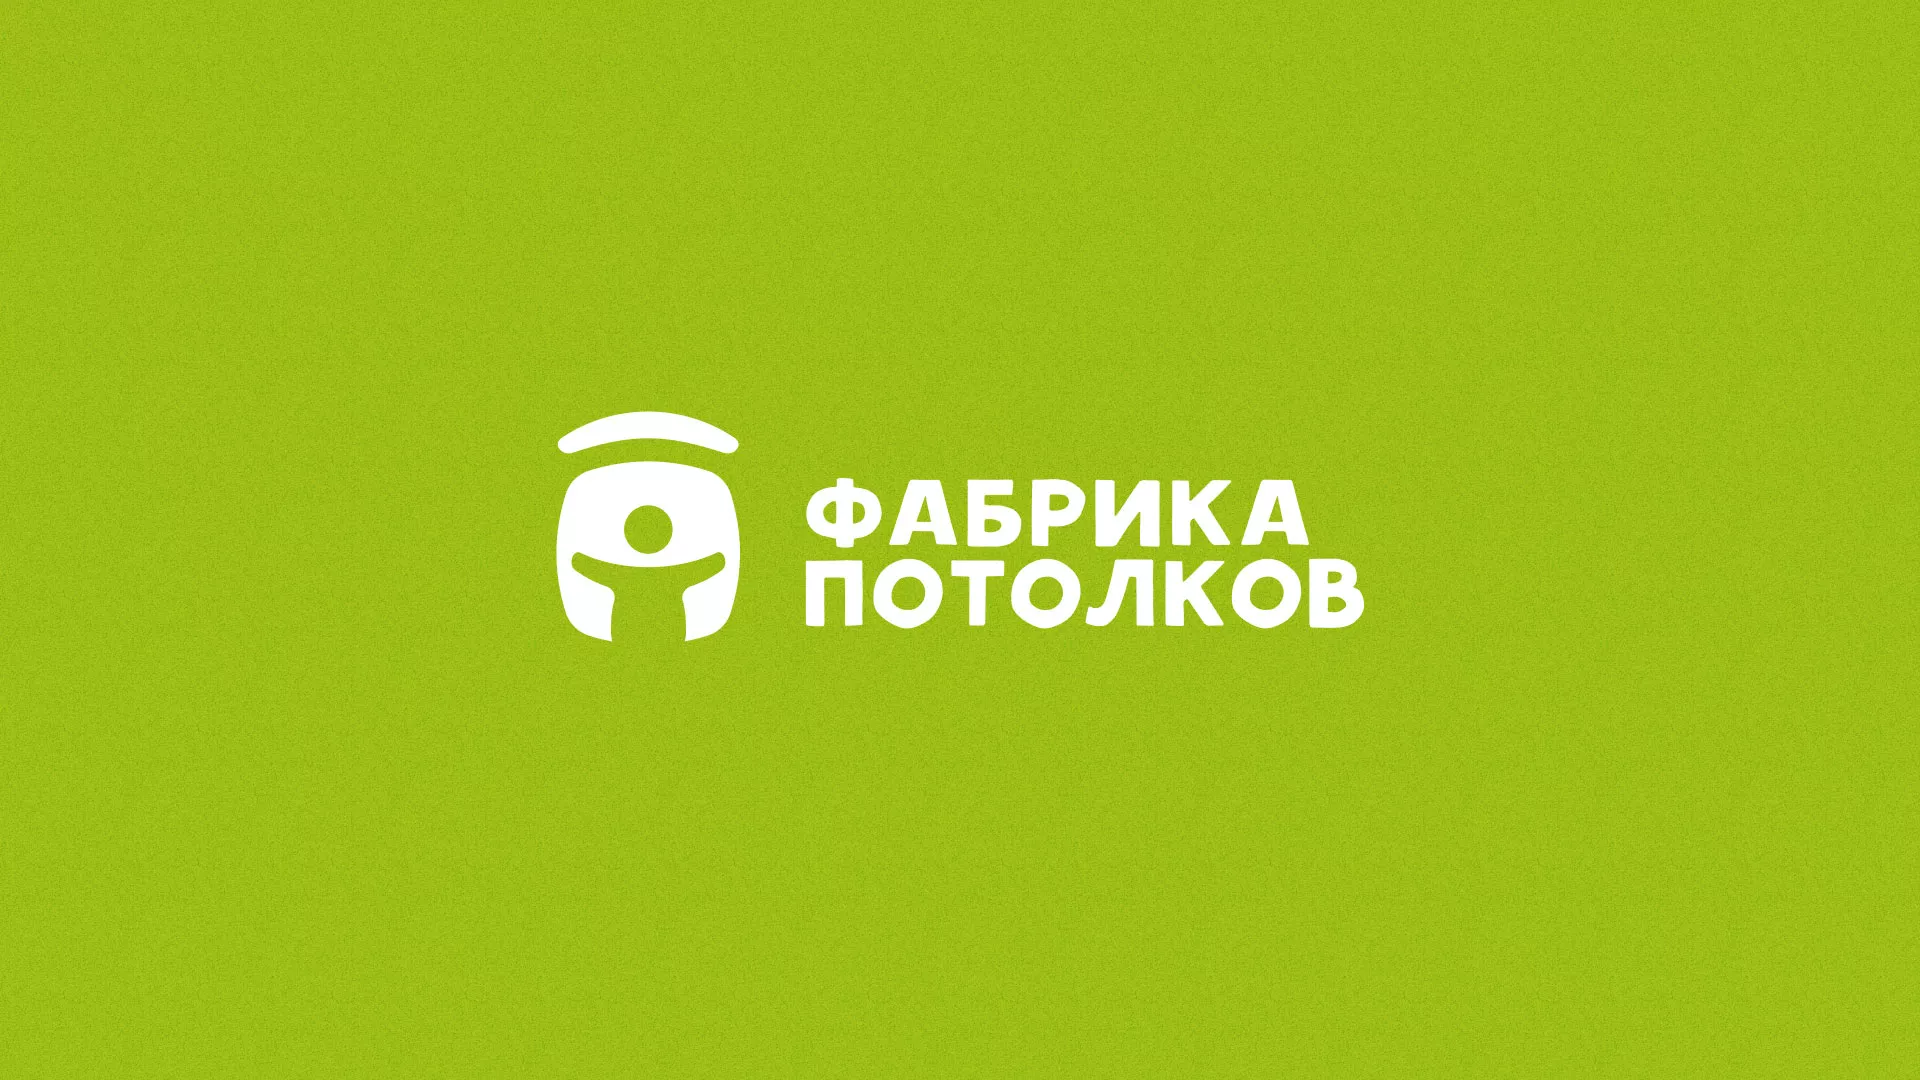 Разработка логотипа для производства натяжных потолков в Зеленограде